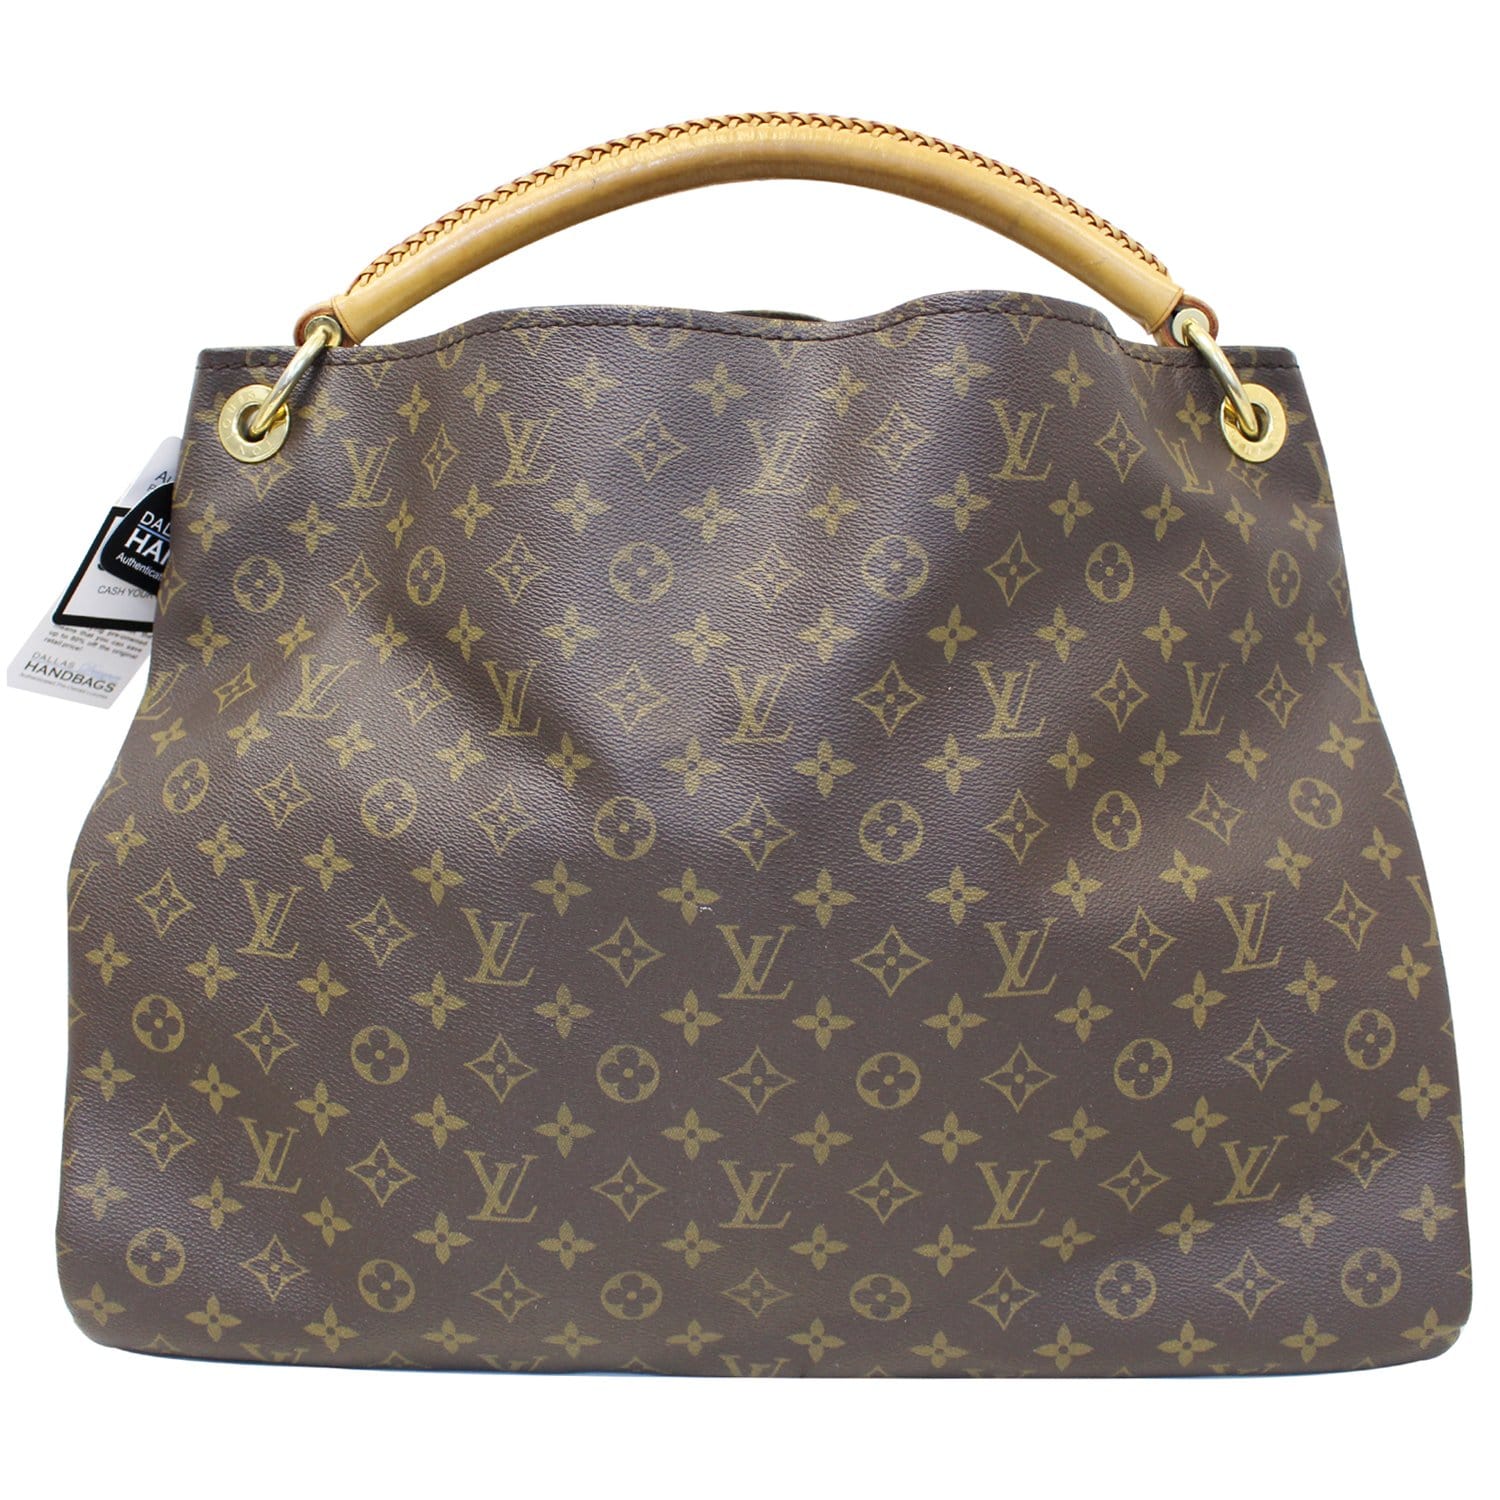 Louis Vuitton. Artsy Monogram Bag. Auction